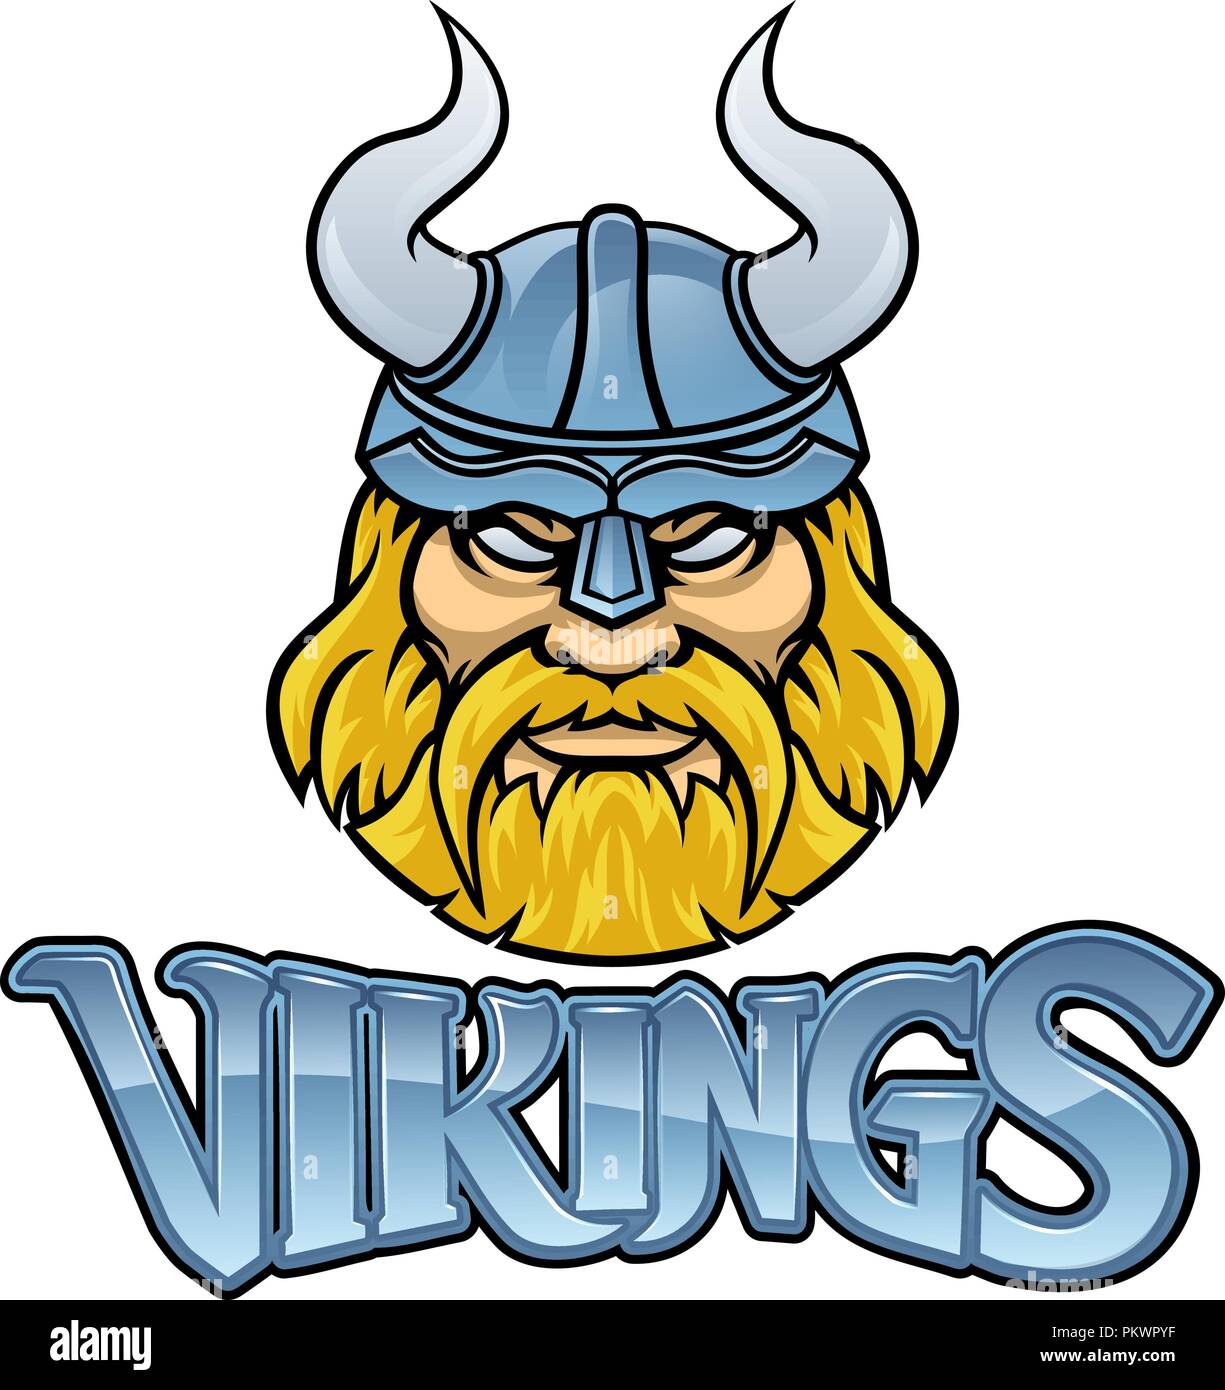 Guerrier Viking Mascot Sign Graphic Illustration de Vecteur